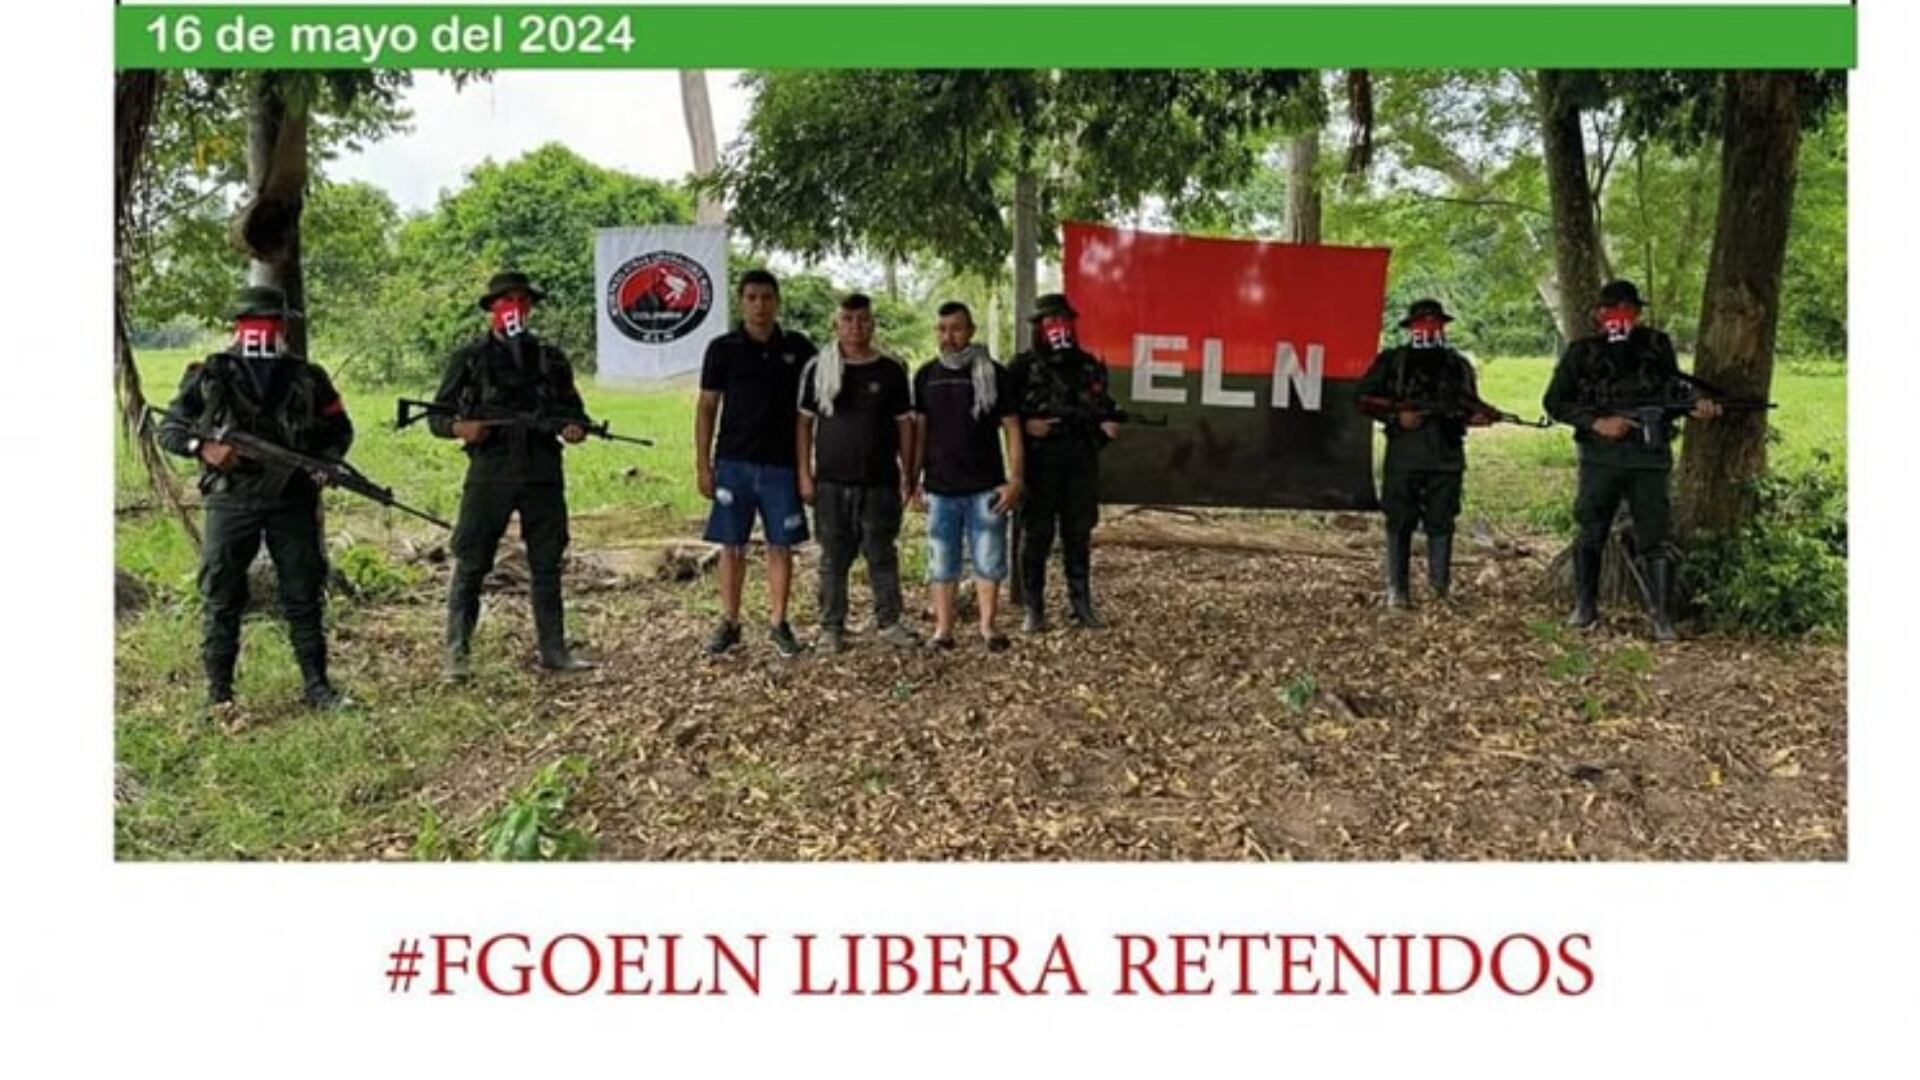 El ELN hizo el anuncio de liberación el jueves 16 de mayo - crédito ELN/ Redes sociales